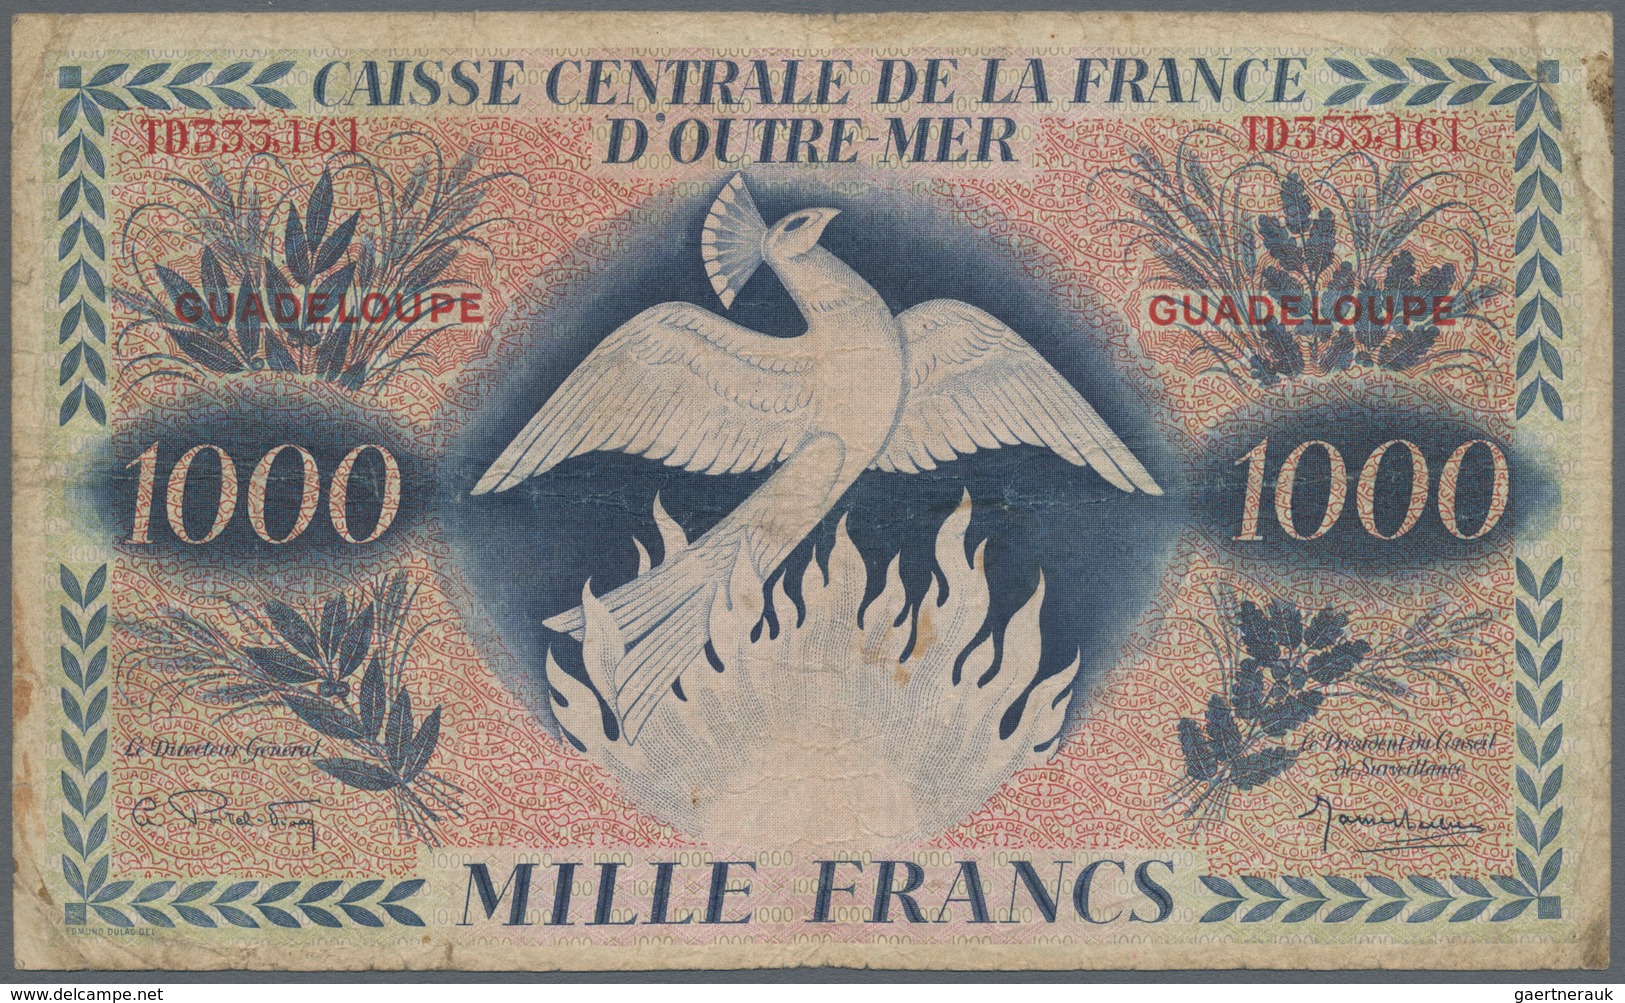 Guadeloupe: Caisse Centrale De La France D'Outre-Mer 1000 Francs 1944 With Watermark, P.30b, Extraor - Autres - Amérique